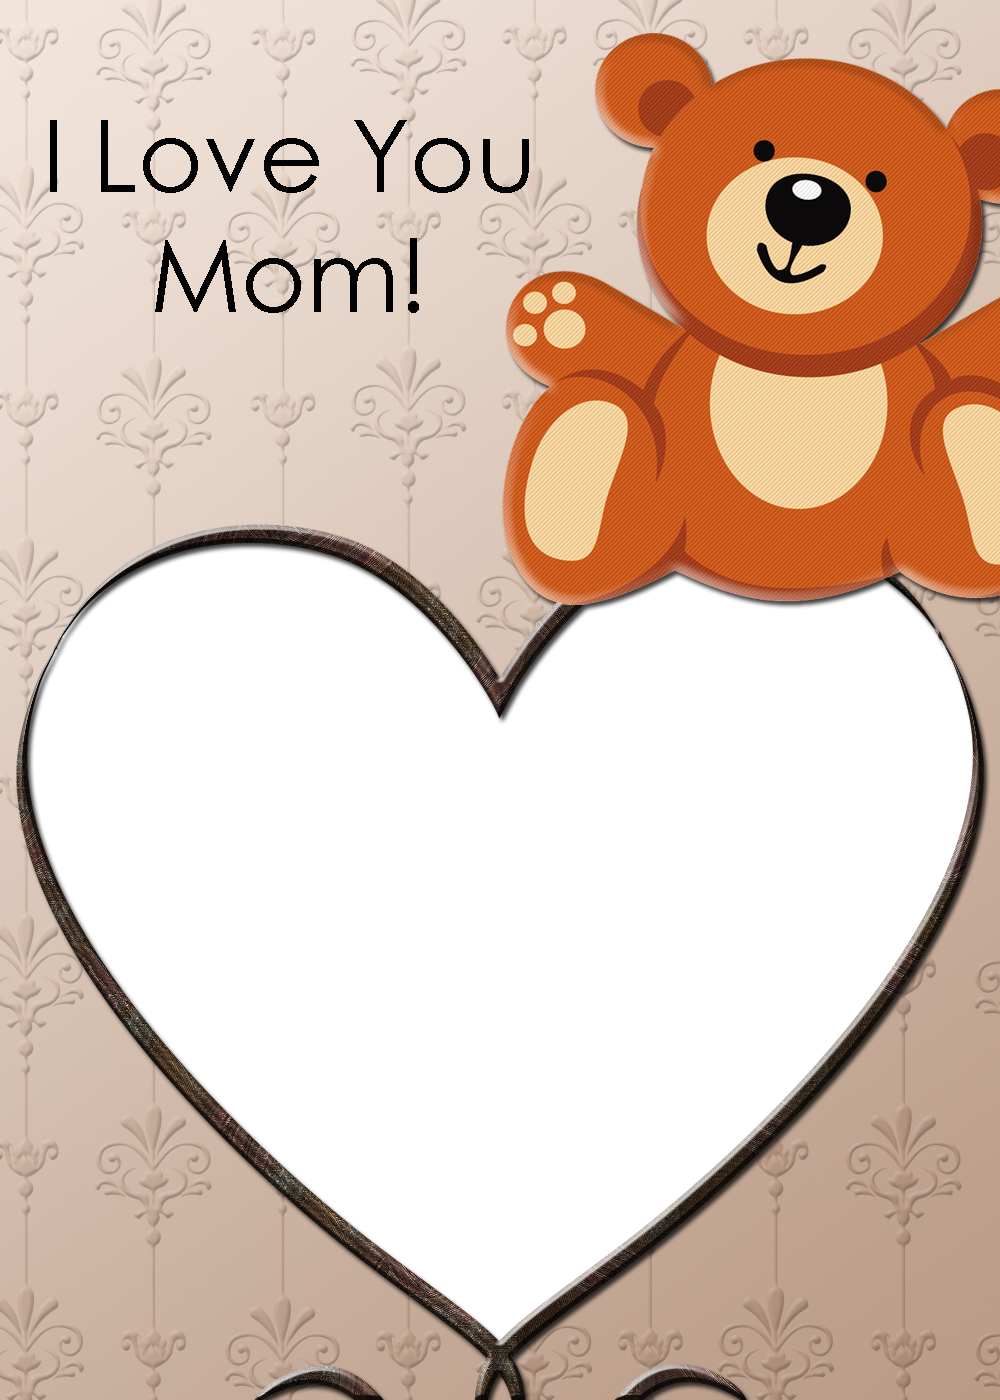 Teddy Bear Photo Card - Thank You Card For Mom (1000x1400)